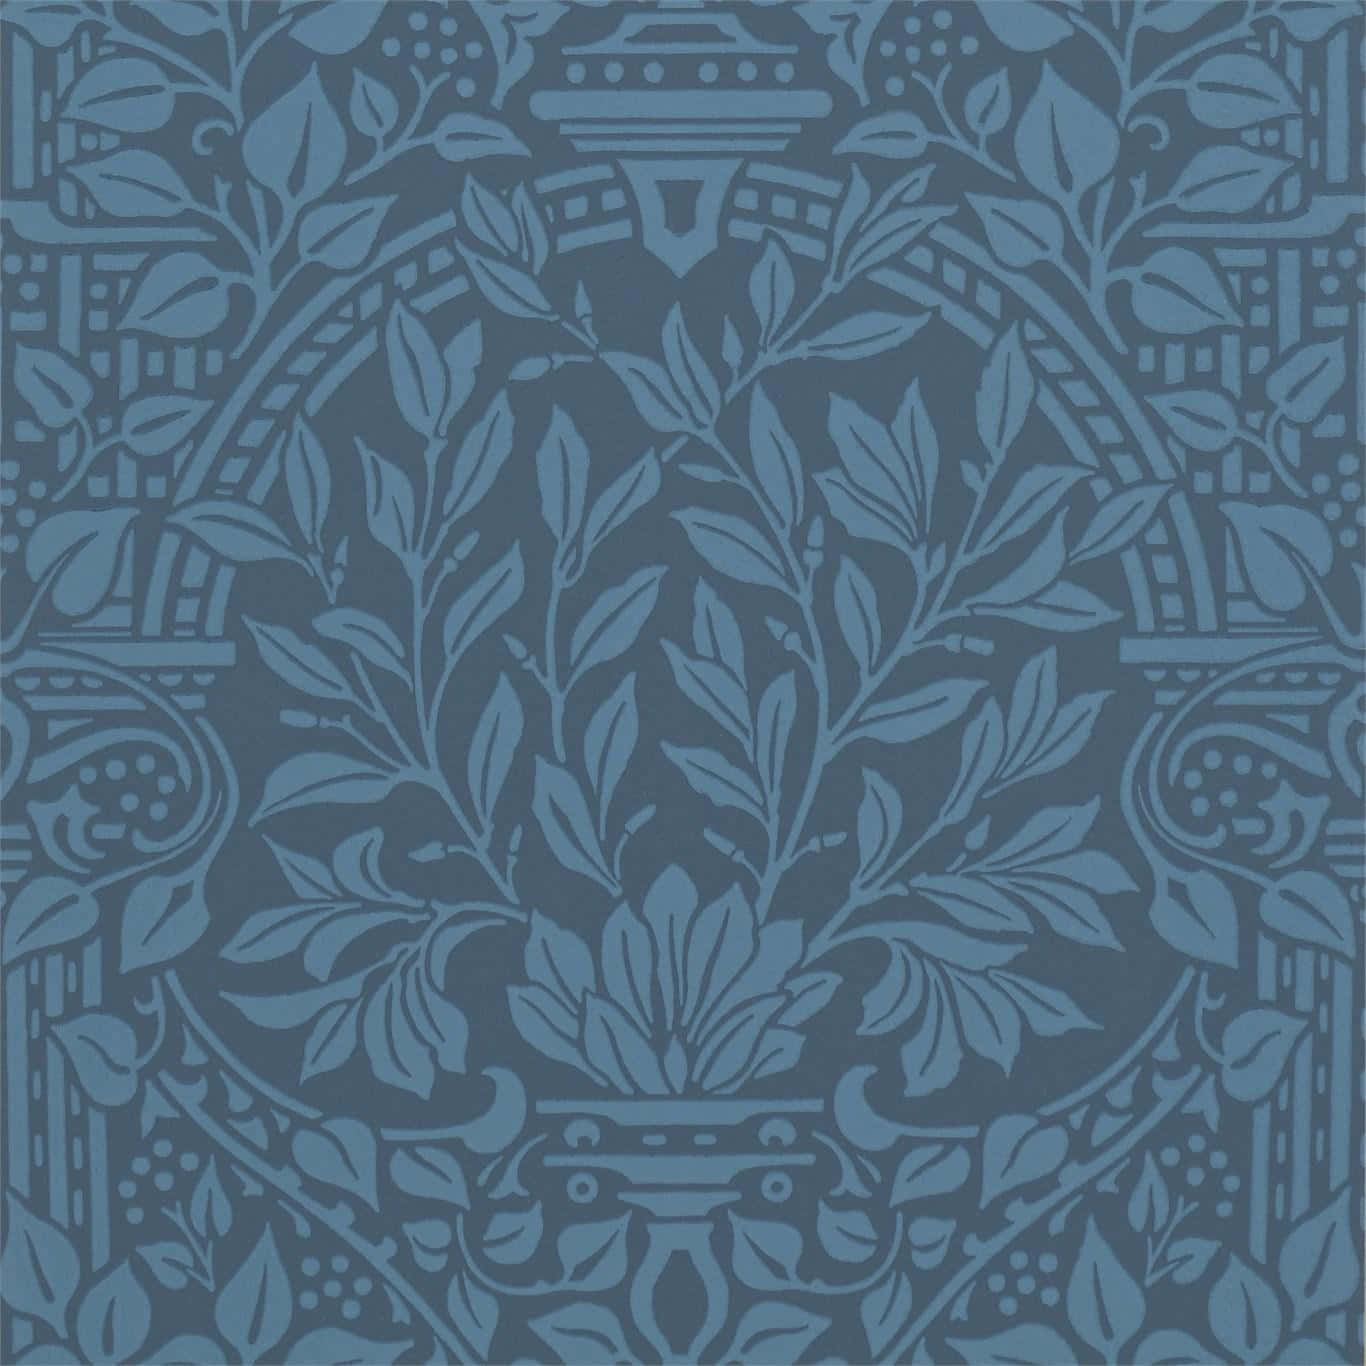 Eineblaue Tapete Mit Einem Kunstvollen Design.